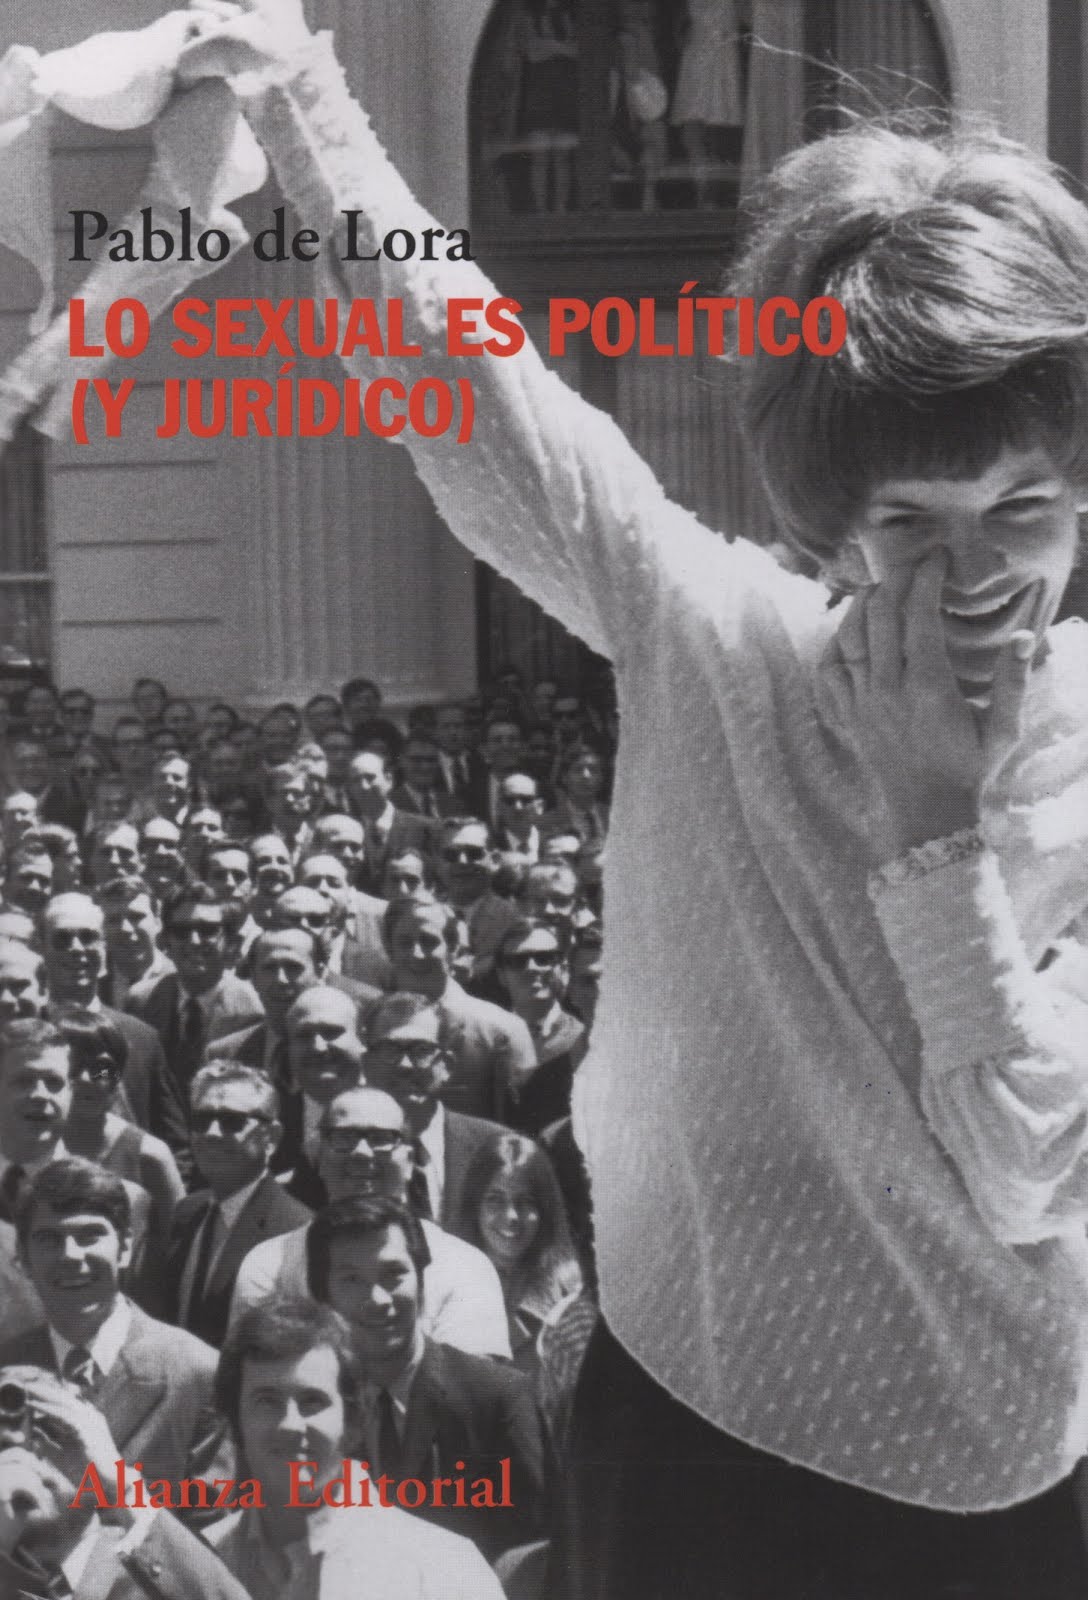 Pablo de Lora (Lo sexual es político (y jurídico)